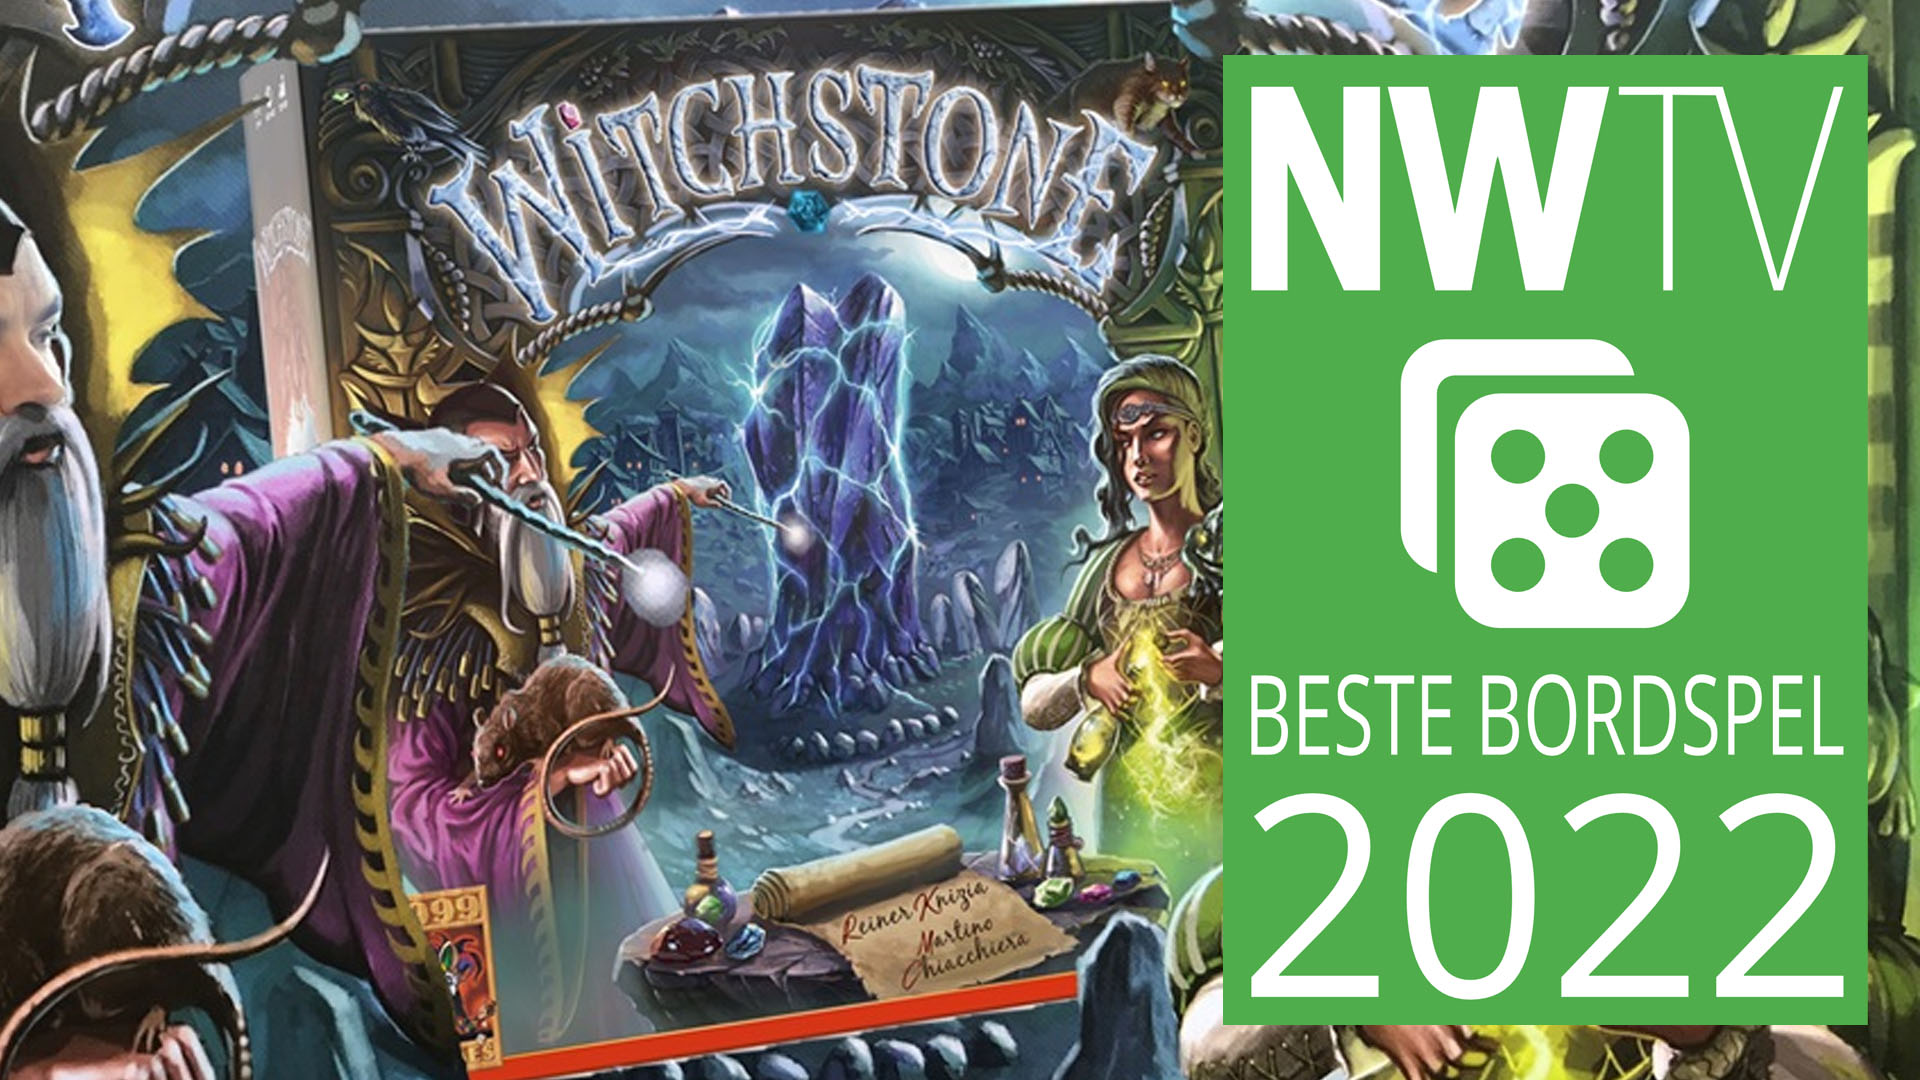 NWTV-Awards 2022: Witchstone is het beste bordspel van 2022